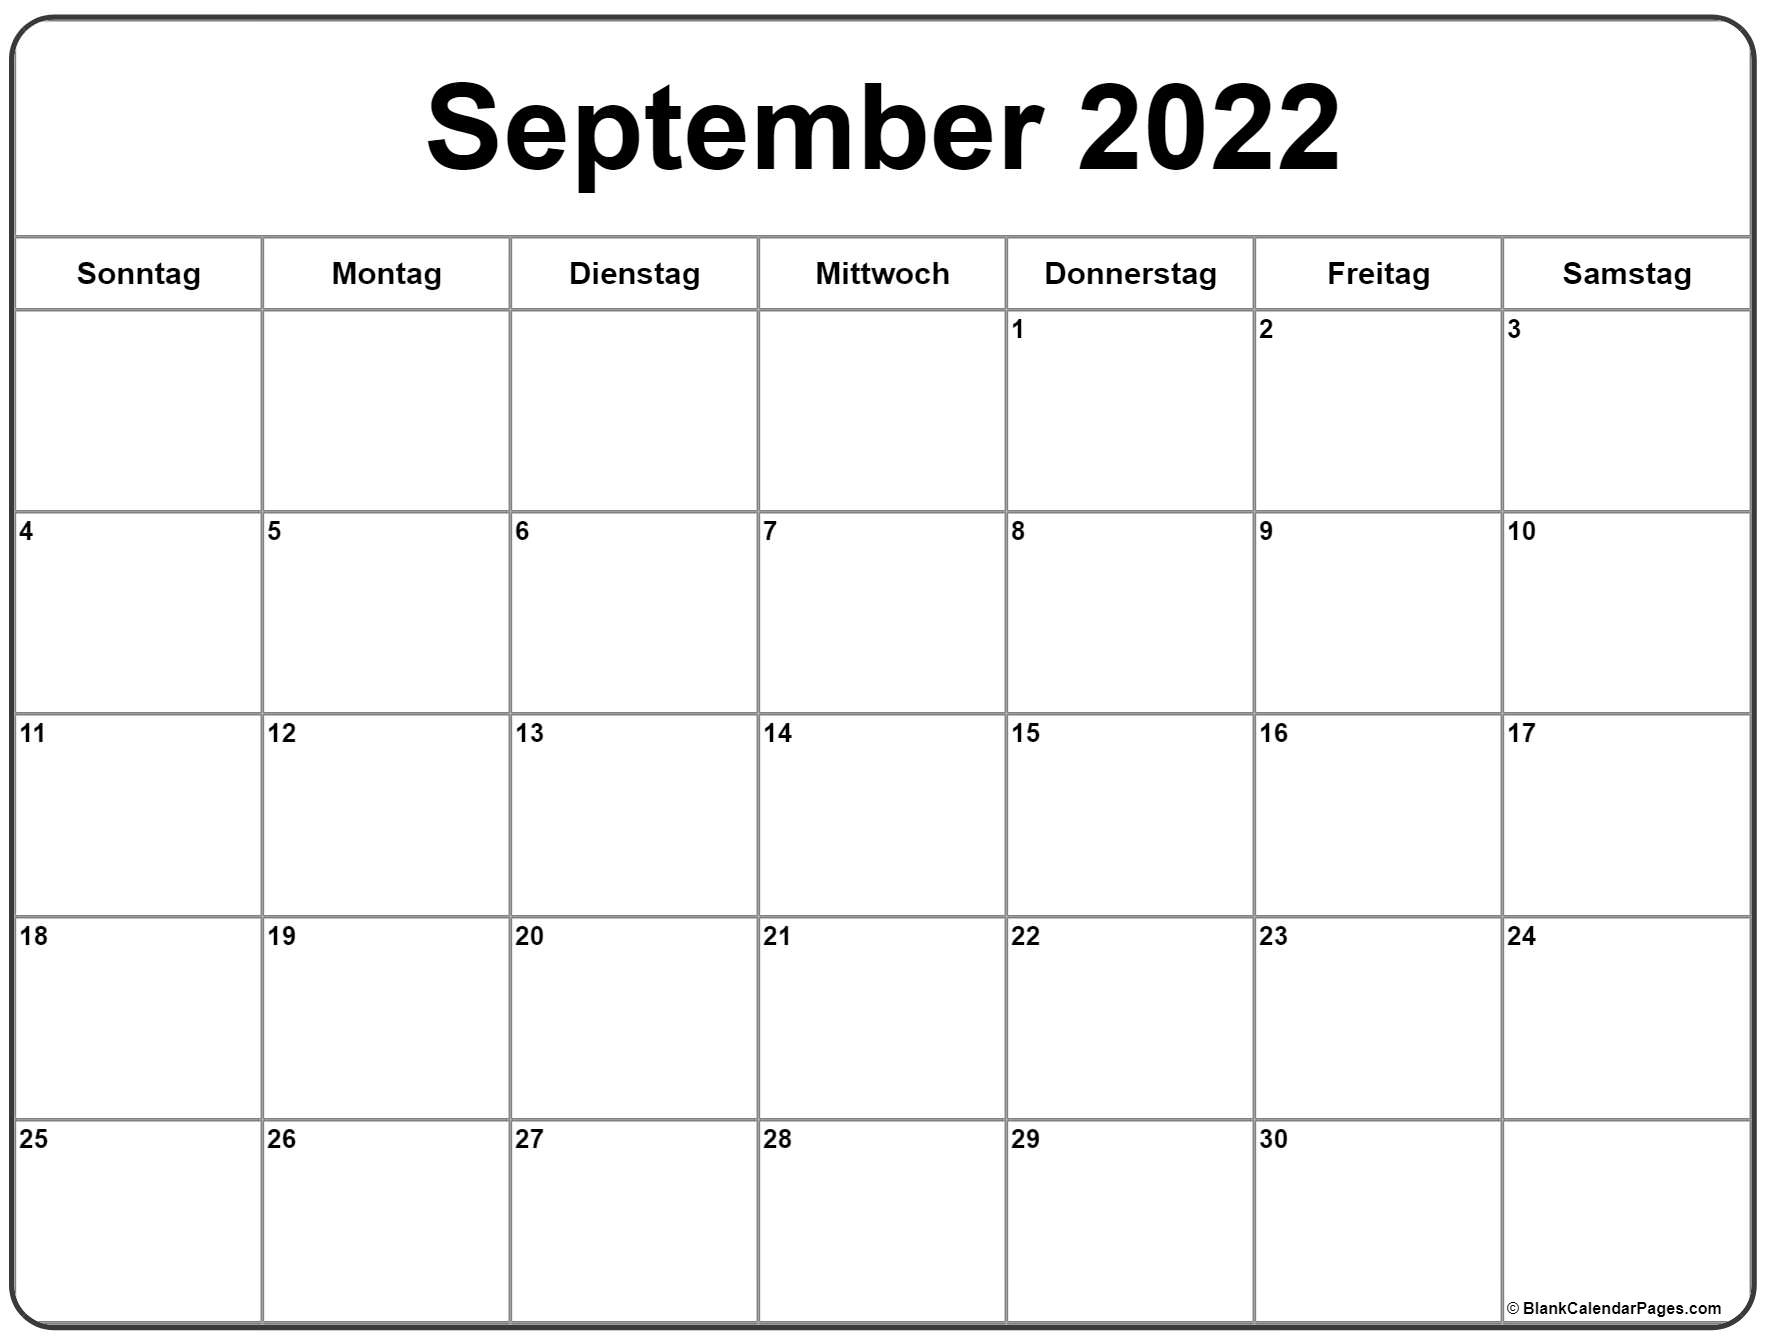 September 2022 Kalender Auf Deutsch | Kalender 2022 Calendar December 2021 January 2022